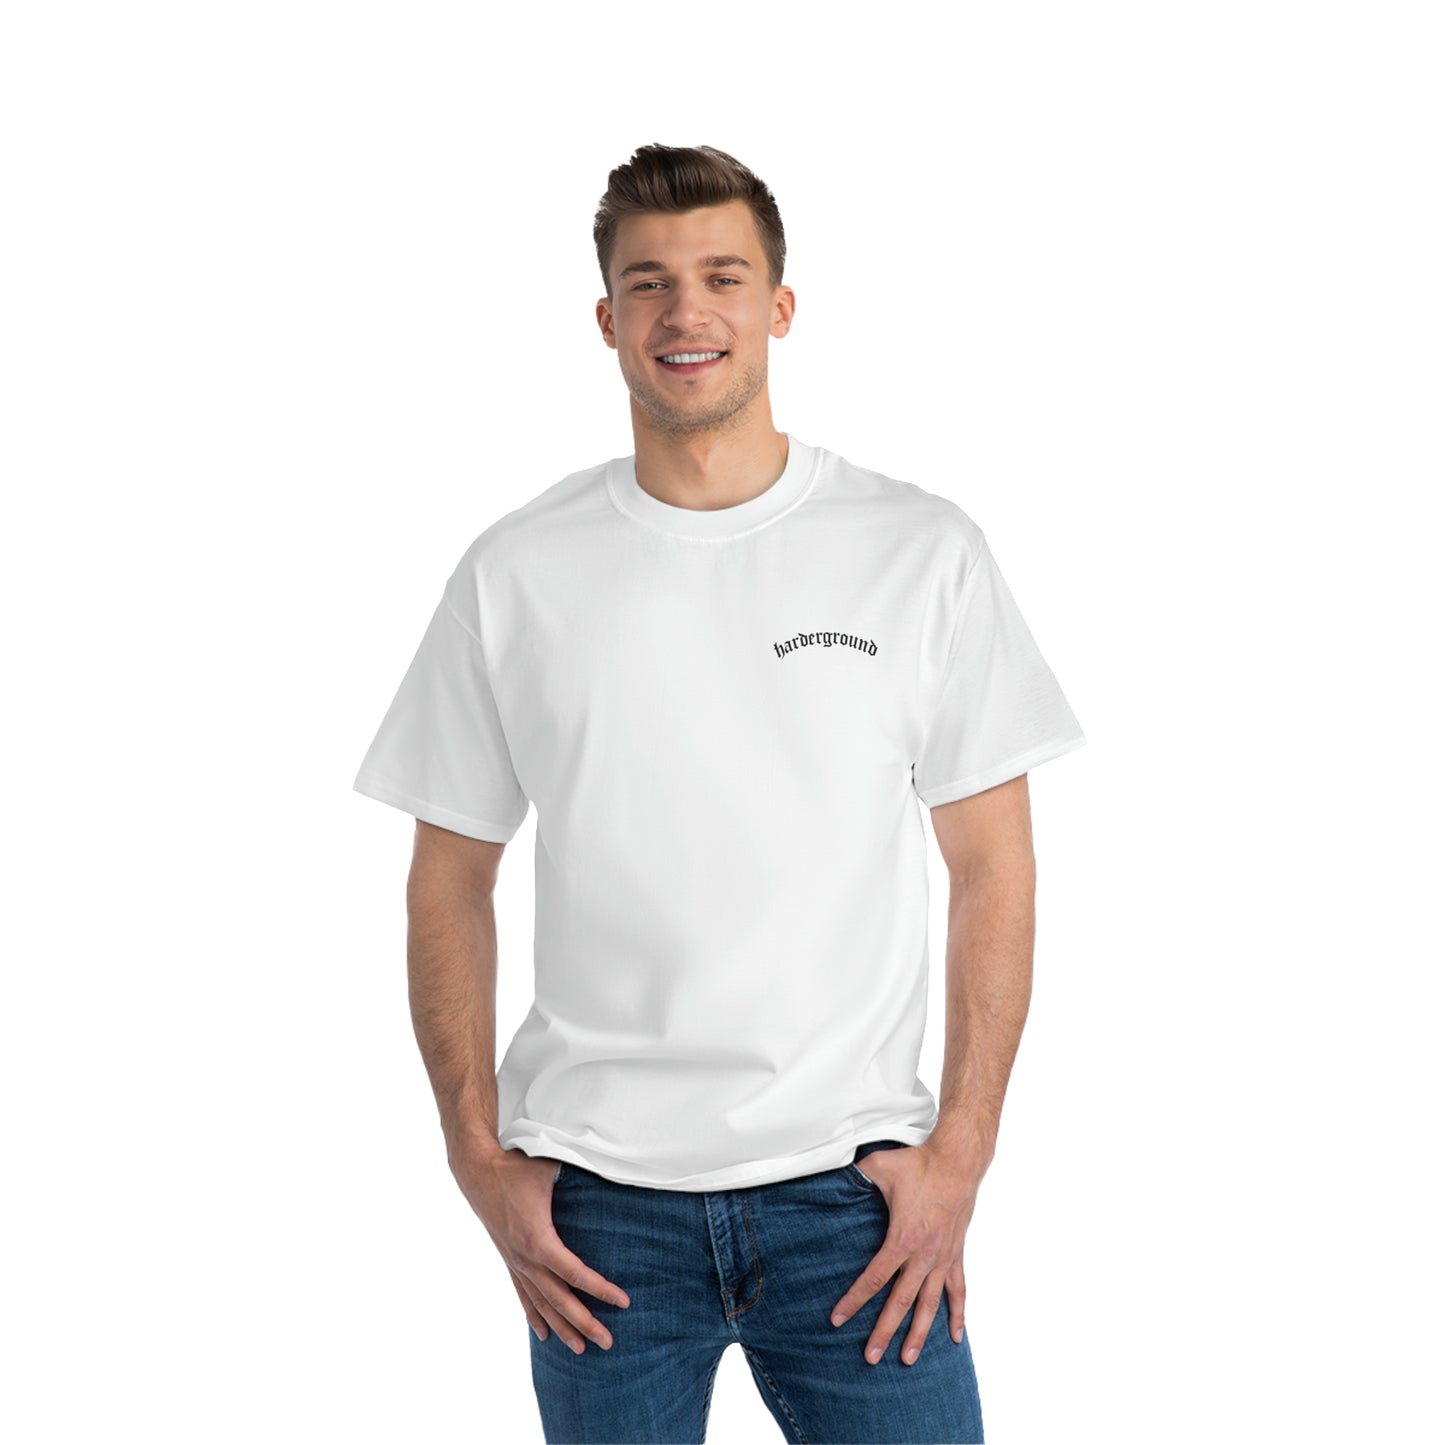 ARTE Harderground - Front & back logos - Beefy-T®  Short-Sleeve T-Shirt